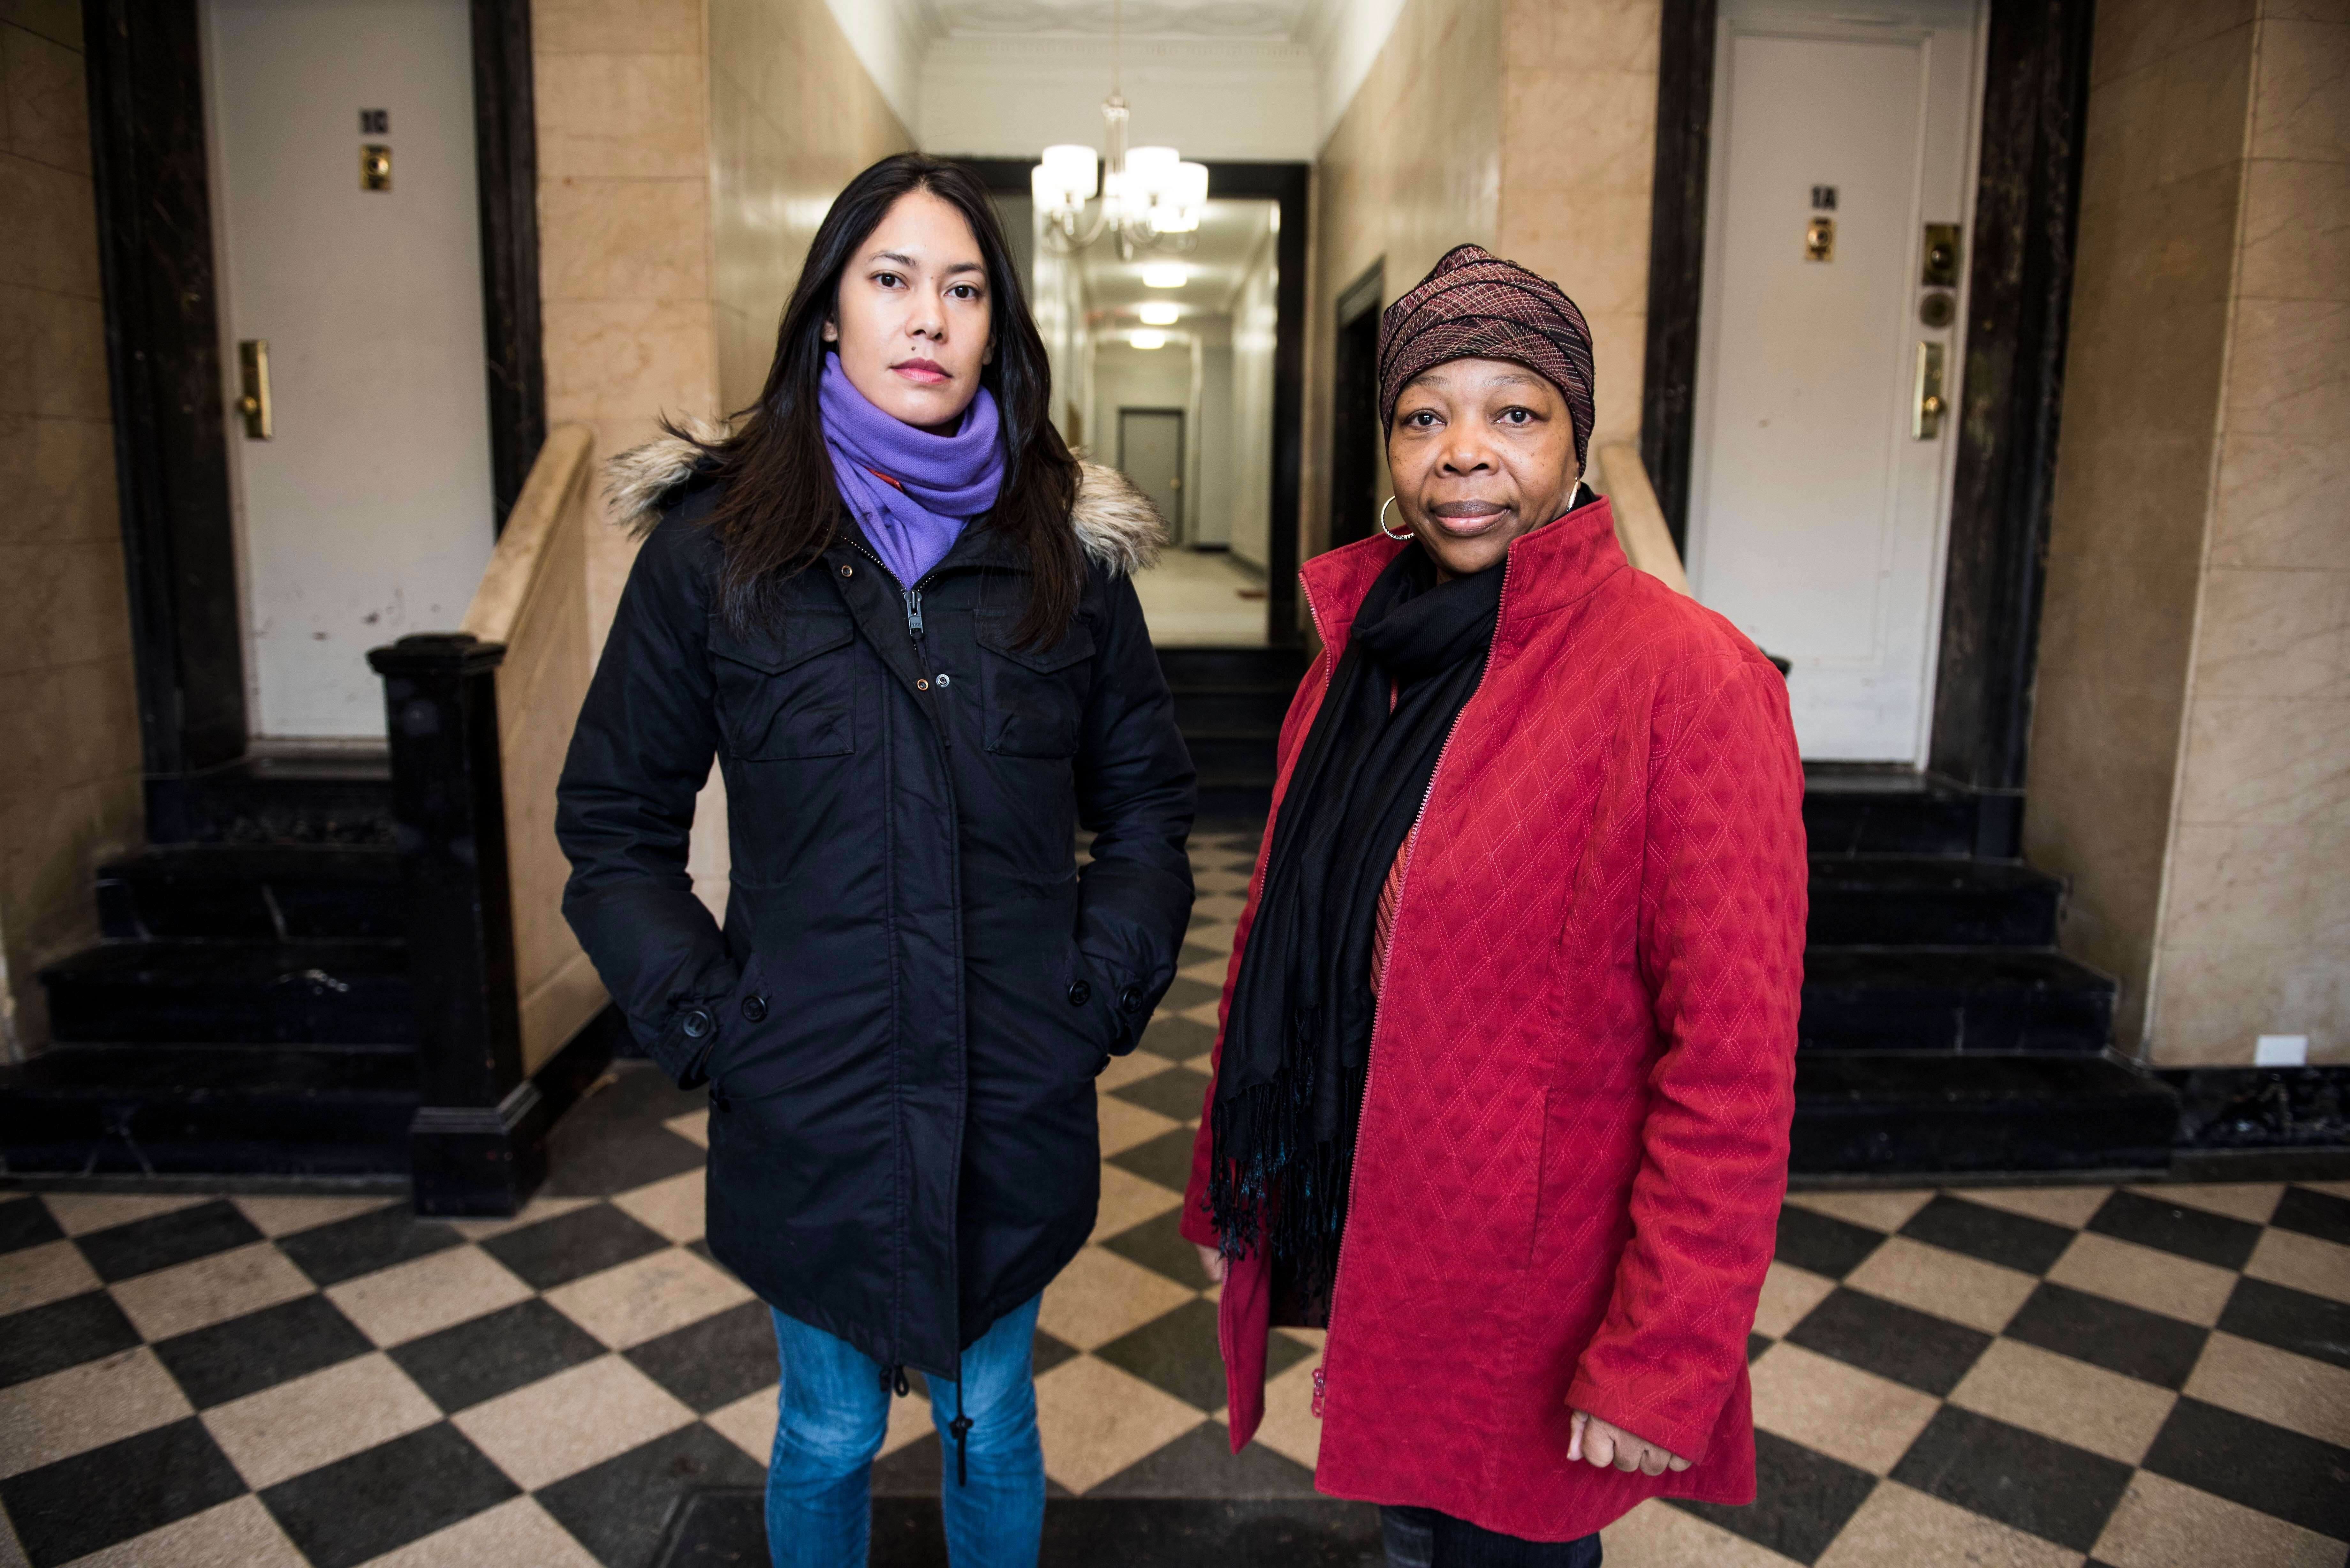 Dara Soukamneuth et Clentine Ferner dans le hall de leur immeuble de Crown Heights, Brooklyn, le 13 janvier 2018. Toutes deux font partie de l'association des locataires de la résidence, qui lutte pour défendre leur santé et leur sécurité.